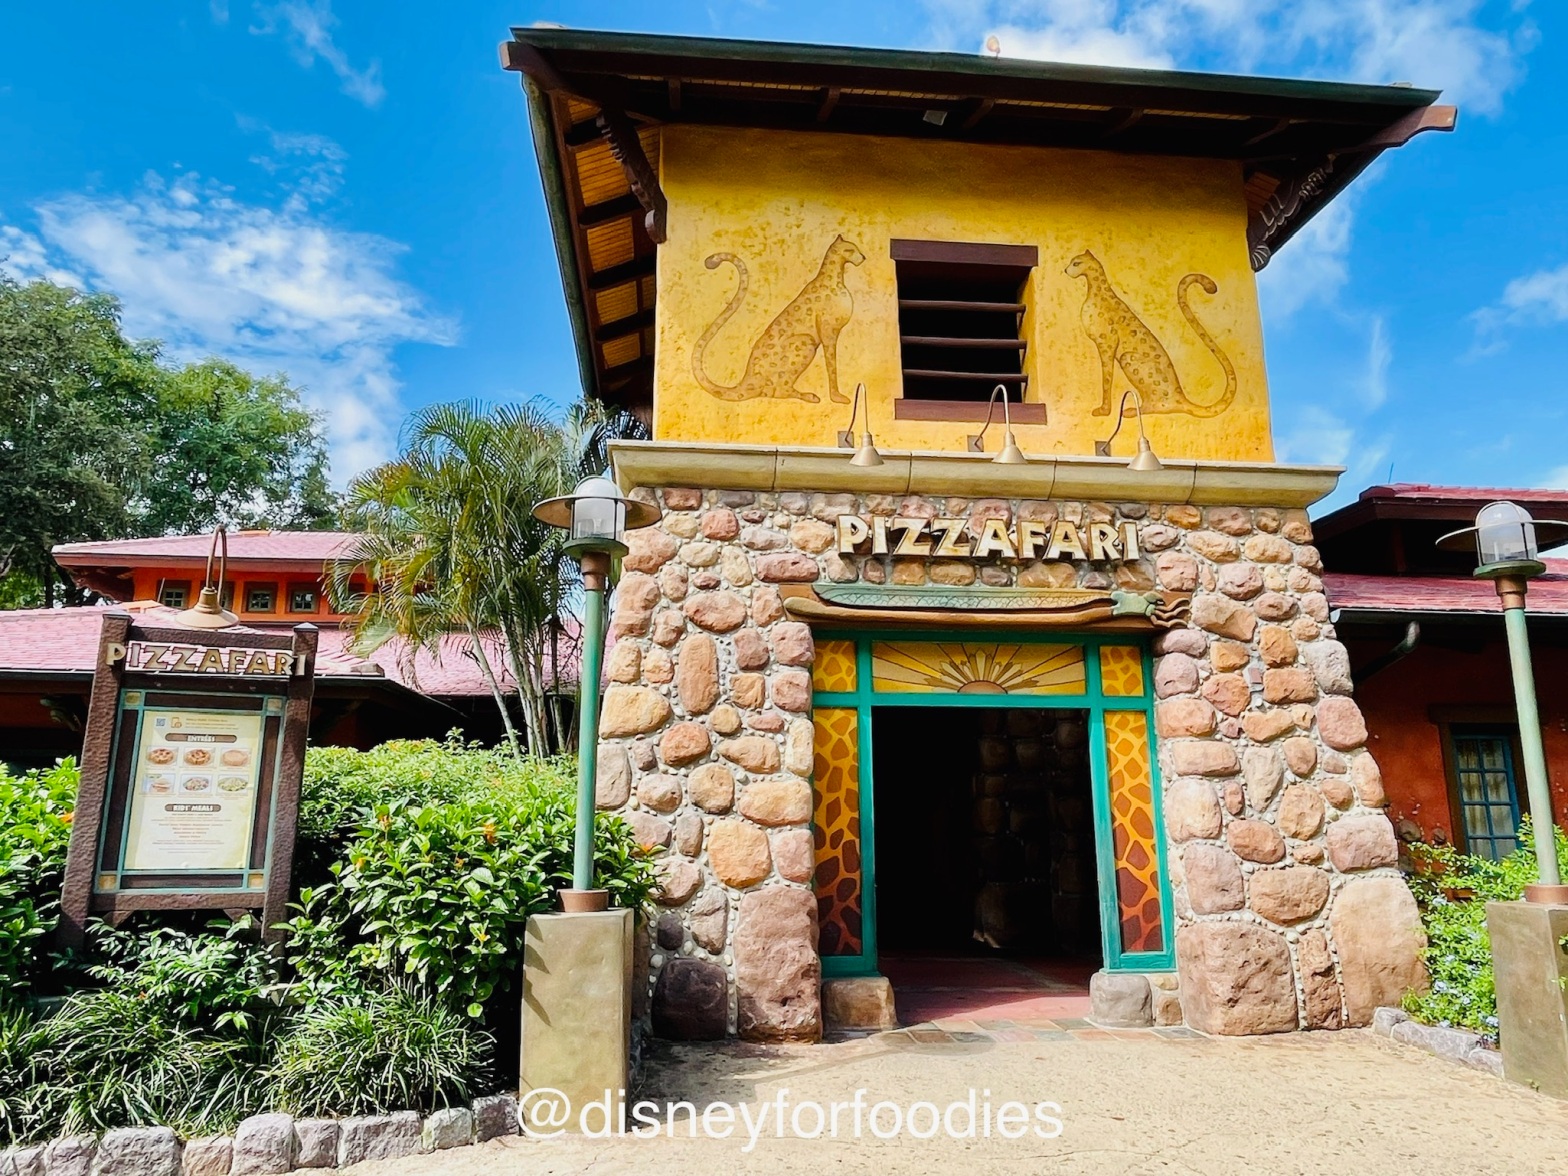 Pizzafari Reopened at Disney's Animal Kingdom – Disney For Foodies